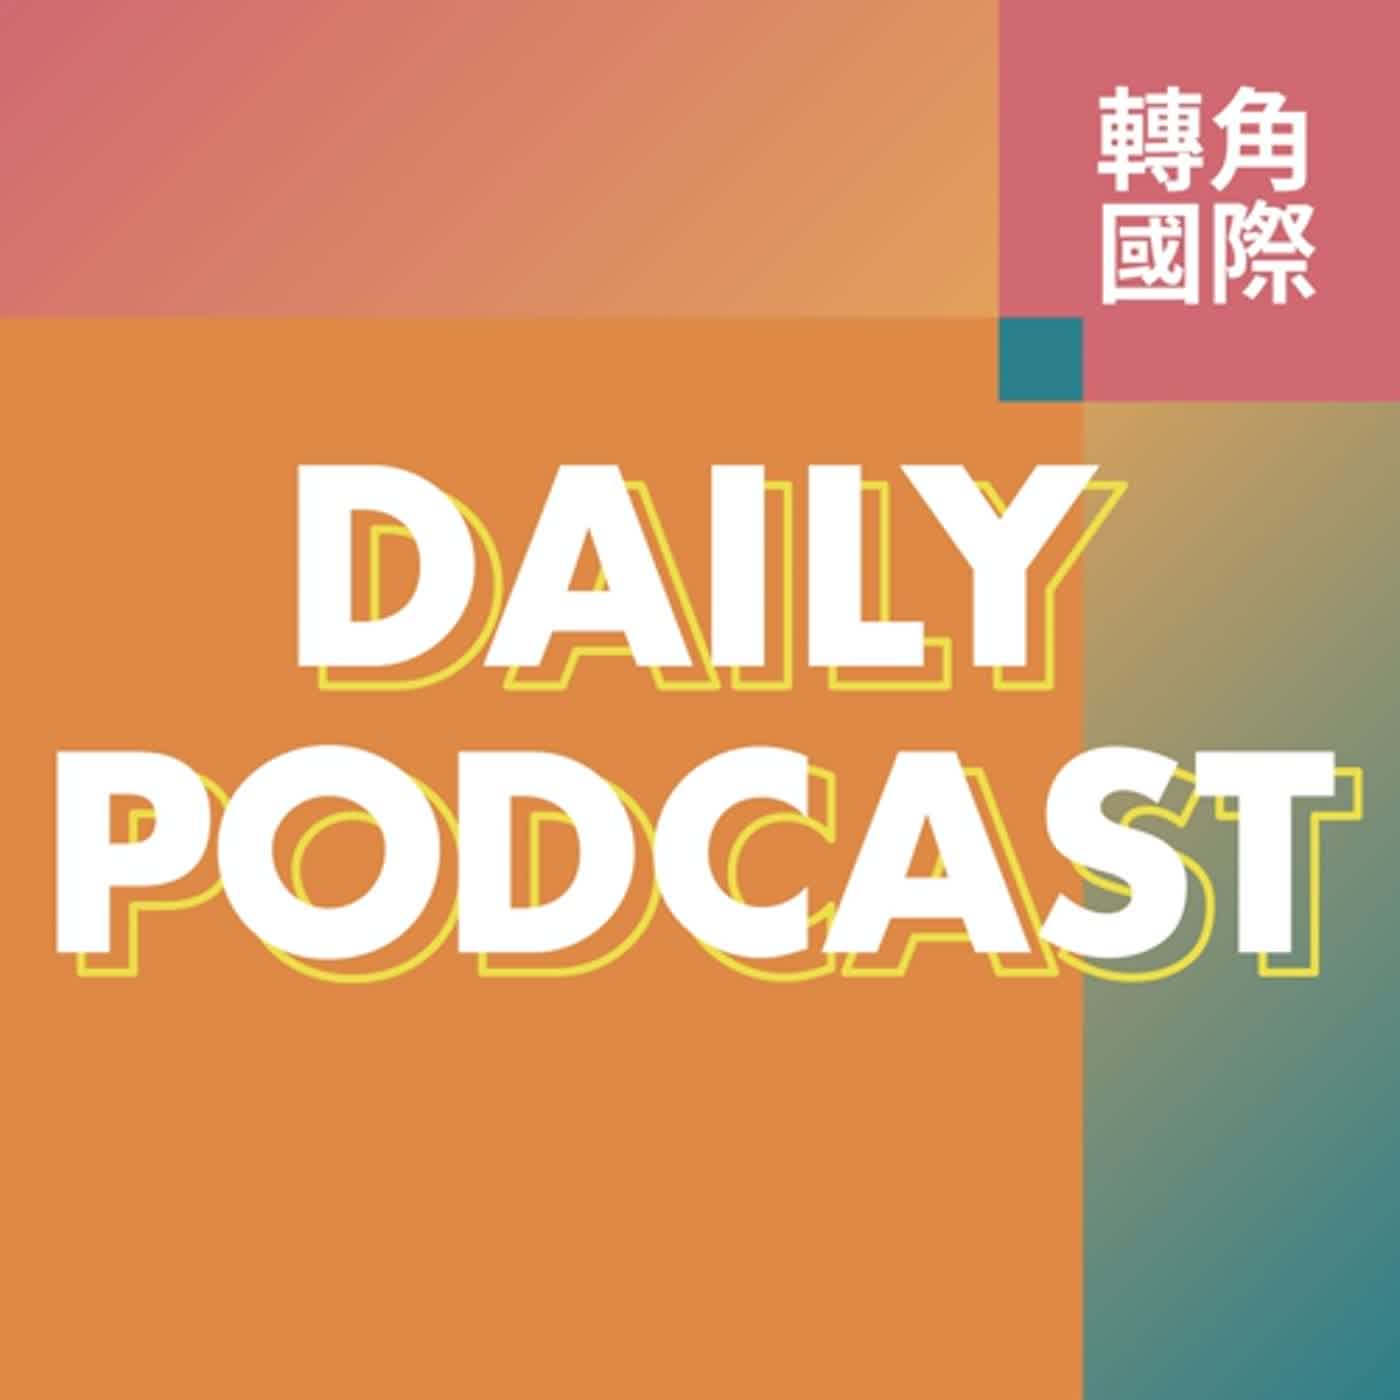 20210730．中國南京疫情擴散影響多省 / 東京奧運期間連三日感染數破紀錄 / 史嘉蕾喬韓森為《黑寡婦》票房控告迪士尼，爭議為何？